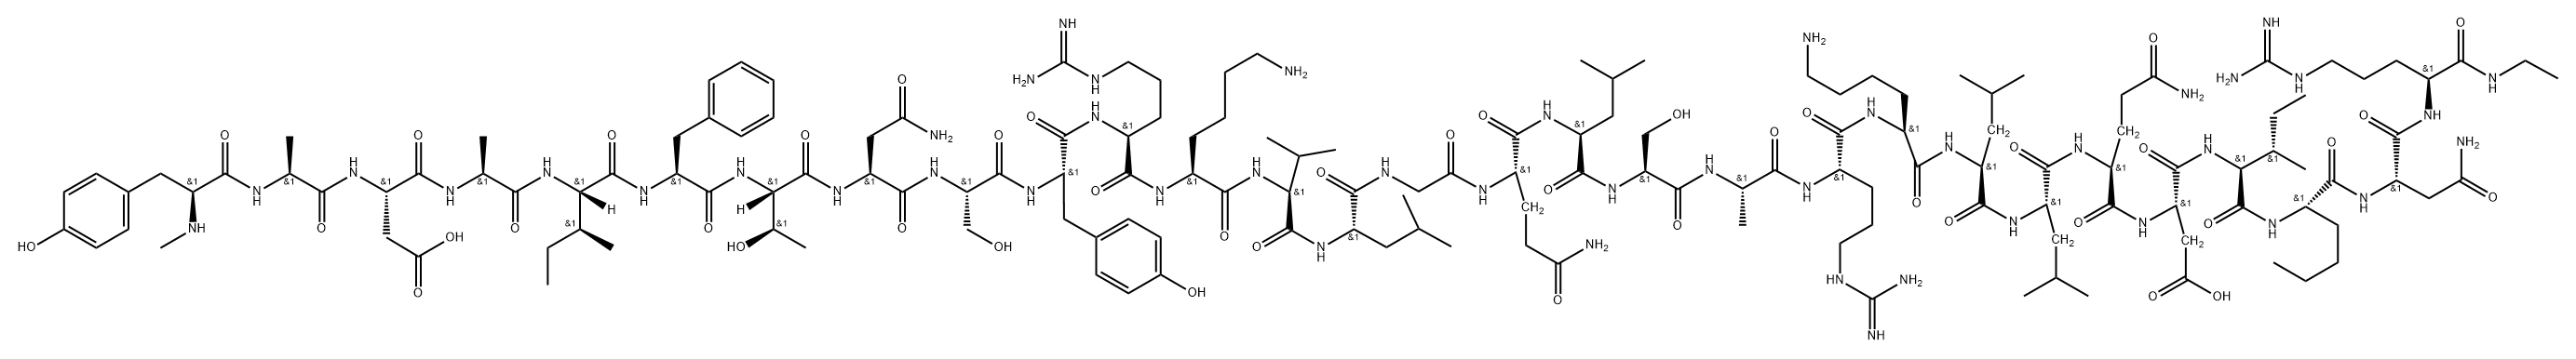 somatotropin releasing hormone-(1-29)NHEt, 1-N-MeTyr-27-Nle-28-Asn-